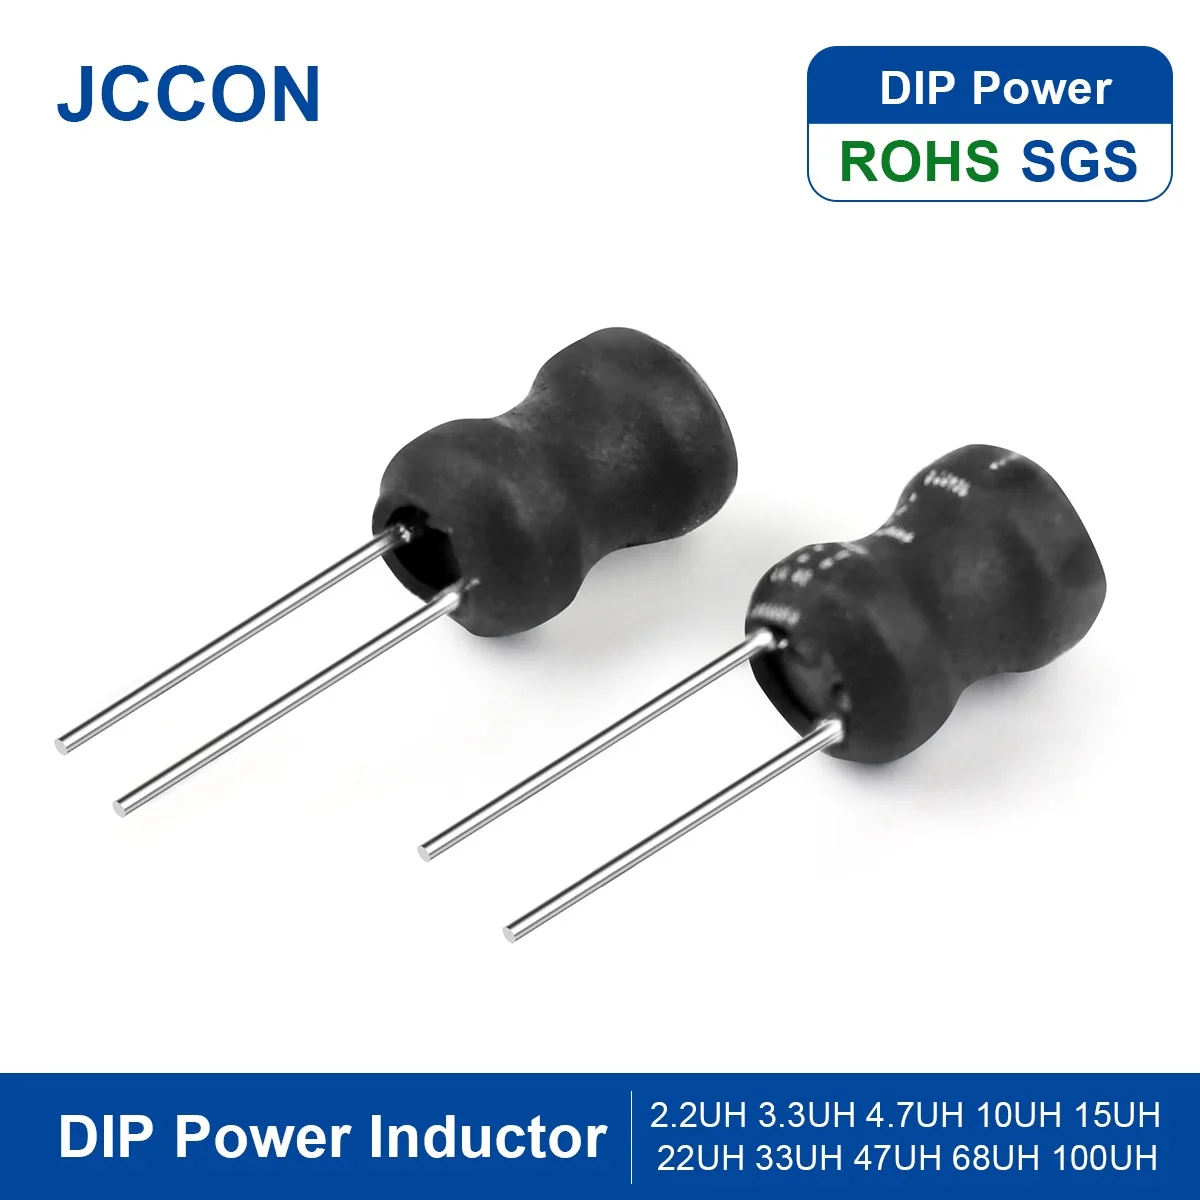 

20Pcs DIP Power Inductor 2.2UH 3.3UH 4.7UH 10UH 15UH 22UH 33UH 47UH 68UH 100UH 150UH 220UH 330UH 470UH Inductance 6x8mm 8x10mm